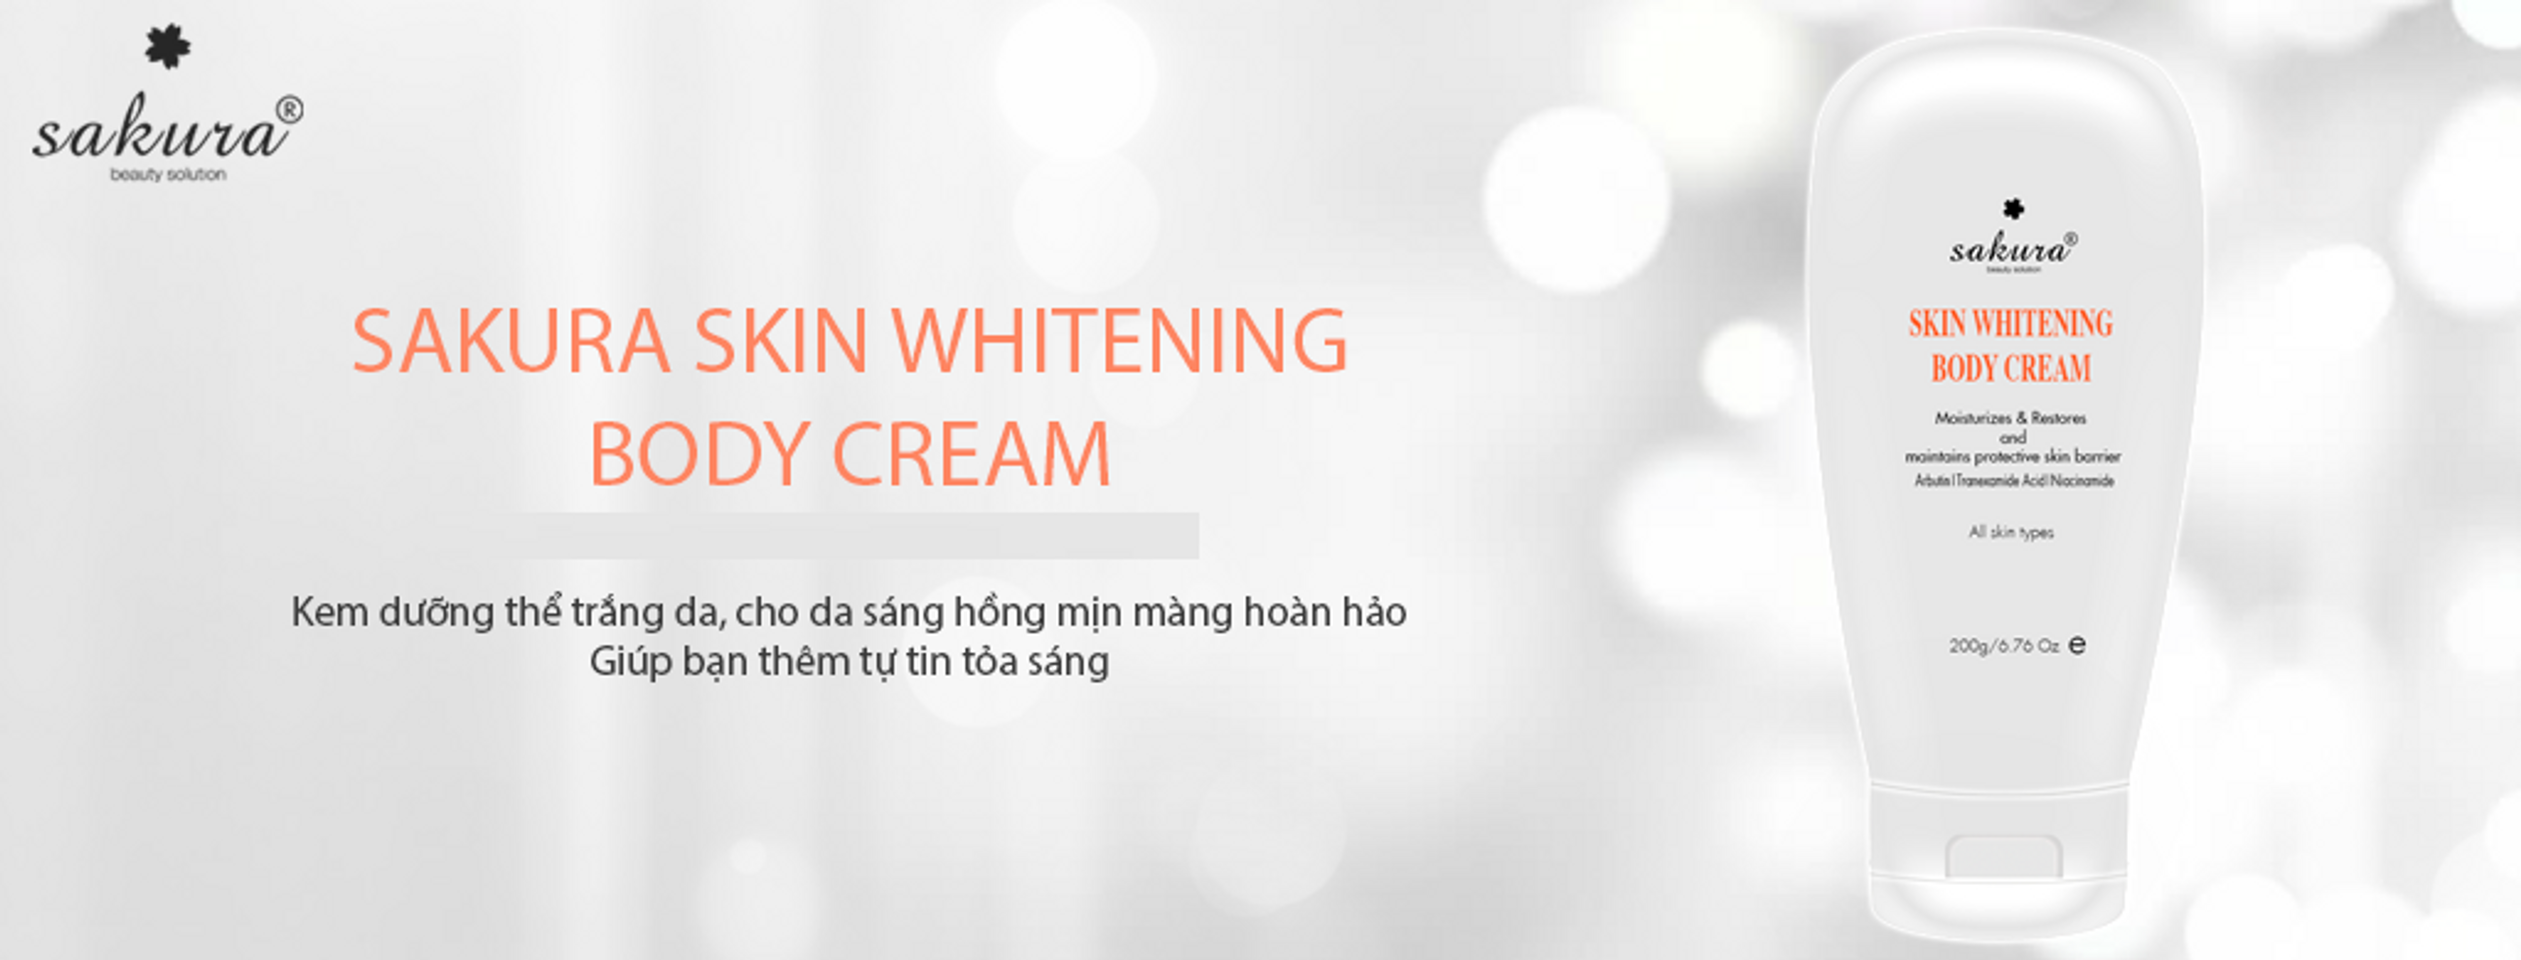 Kem dưỡng trắng da toàn thân Sakura Body Cream là giải pháp cho làn da trắng sáng tự nhiên